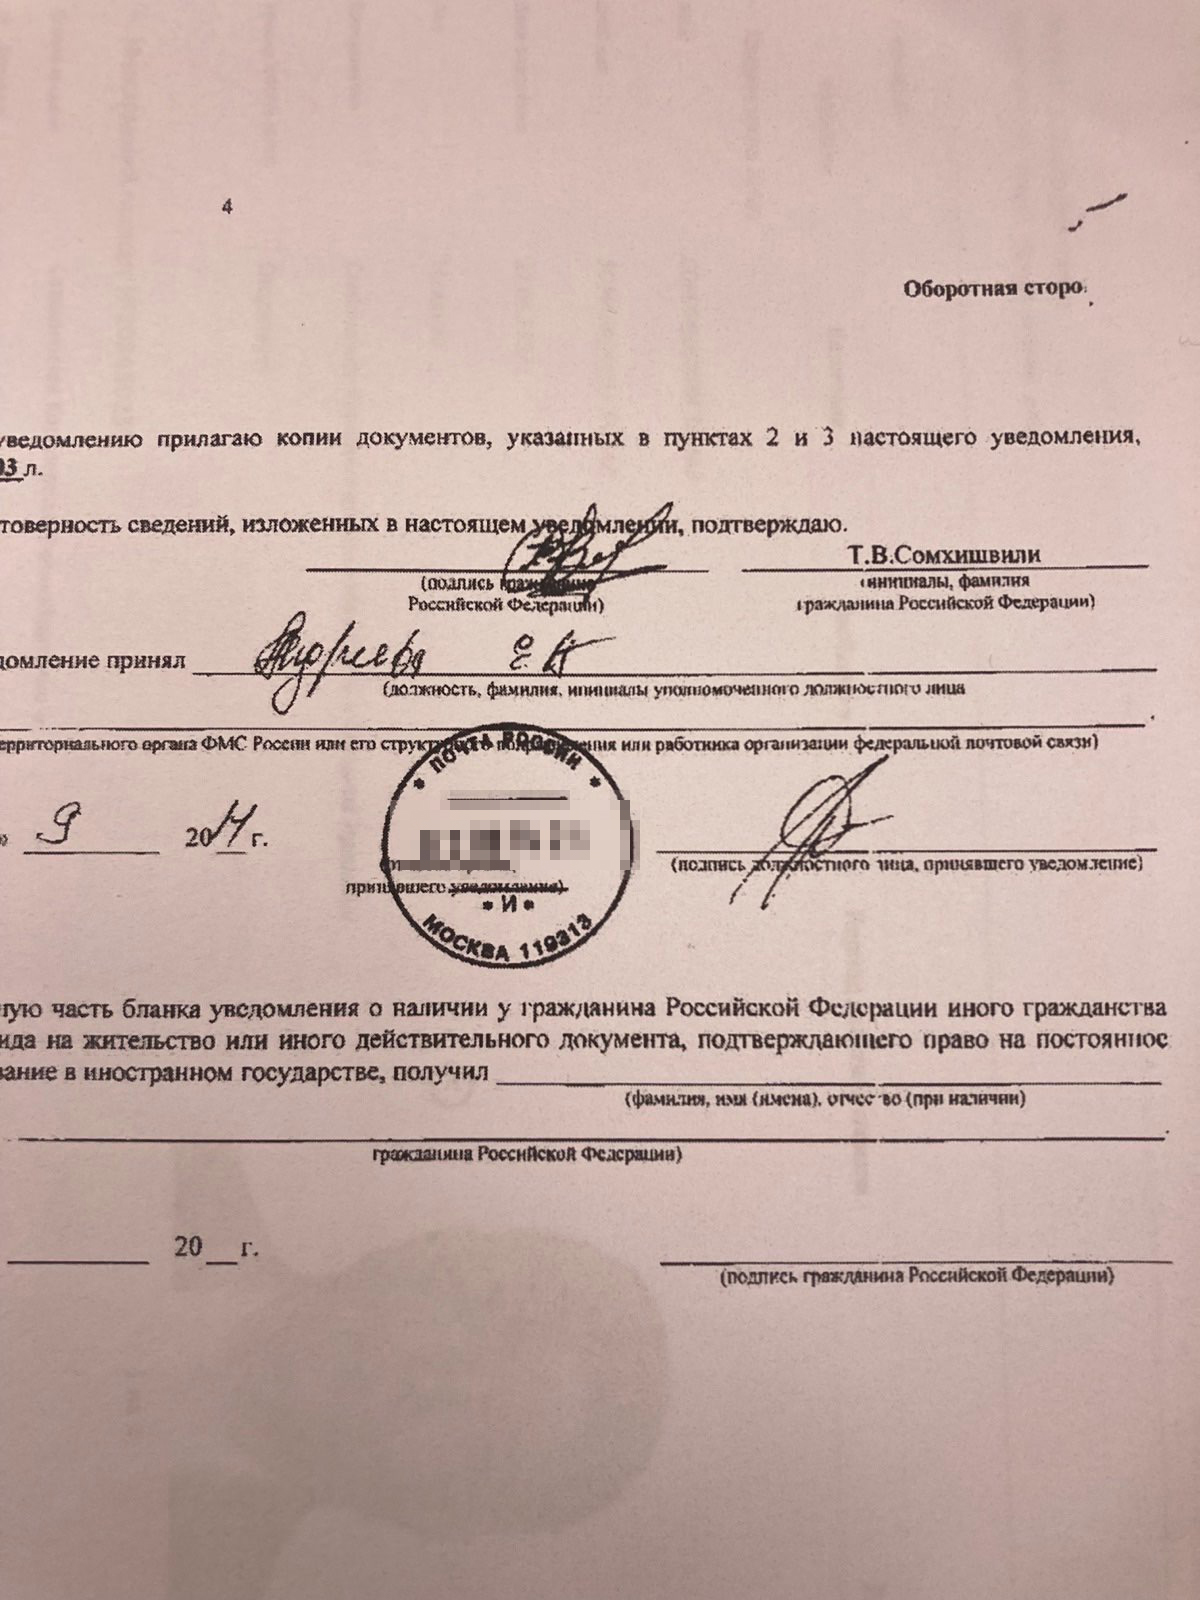 Тамаза Сомхишвили уличили в причастности к оборонке РФ